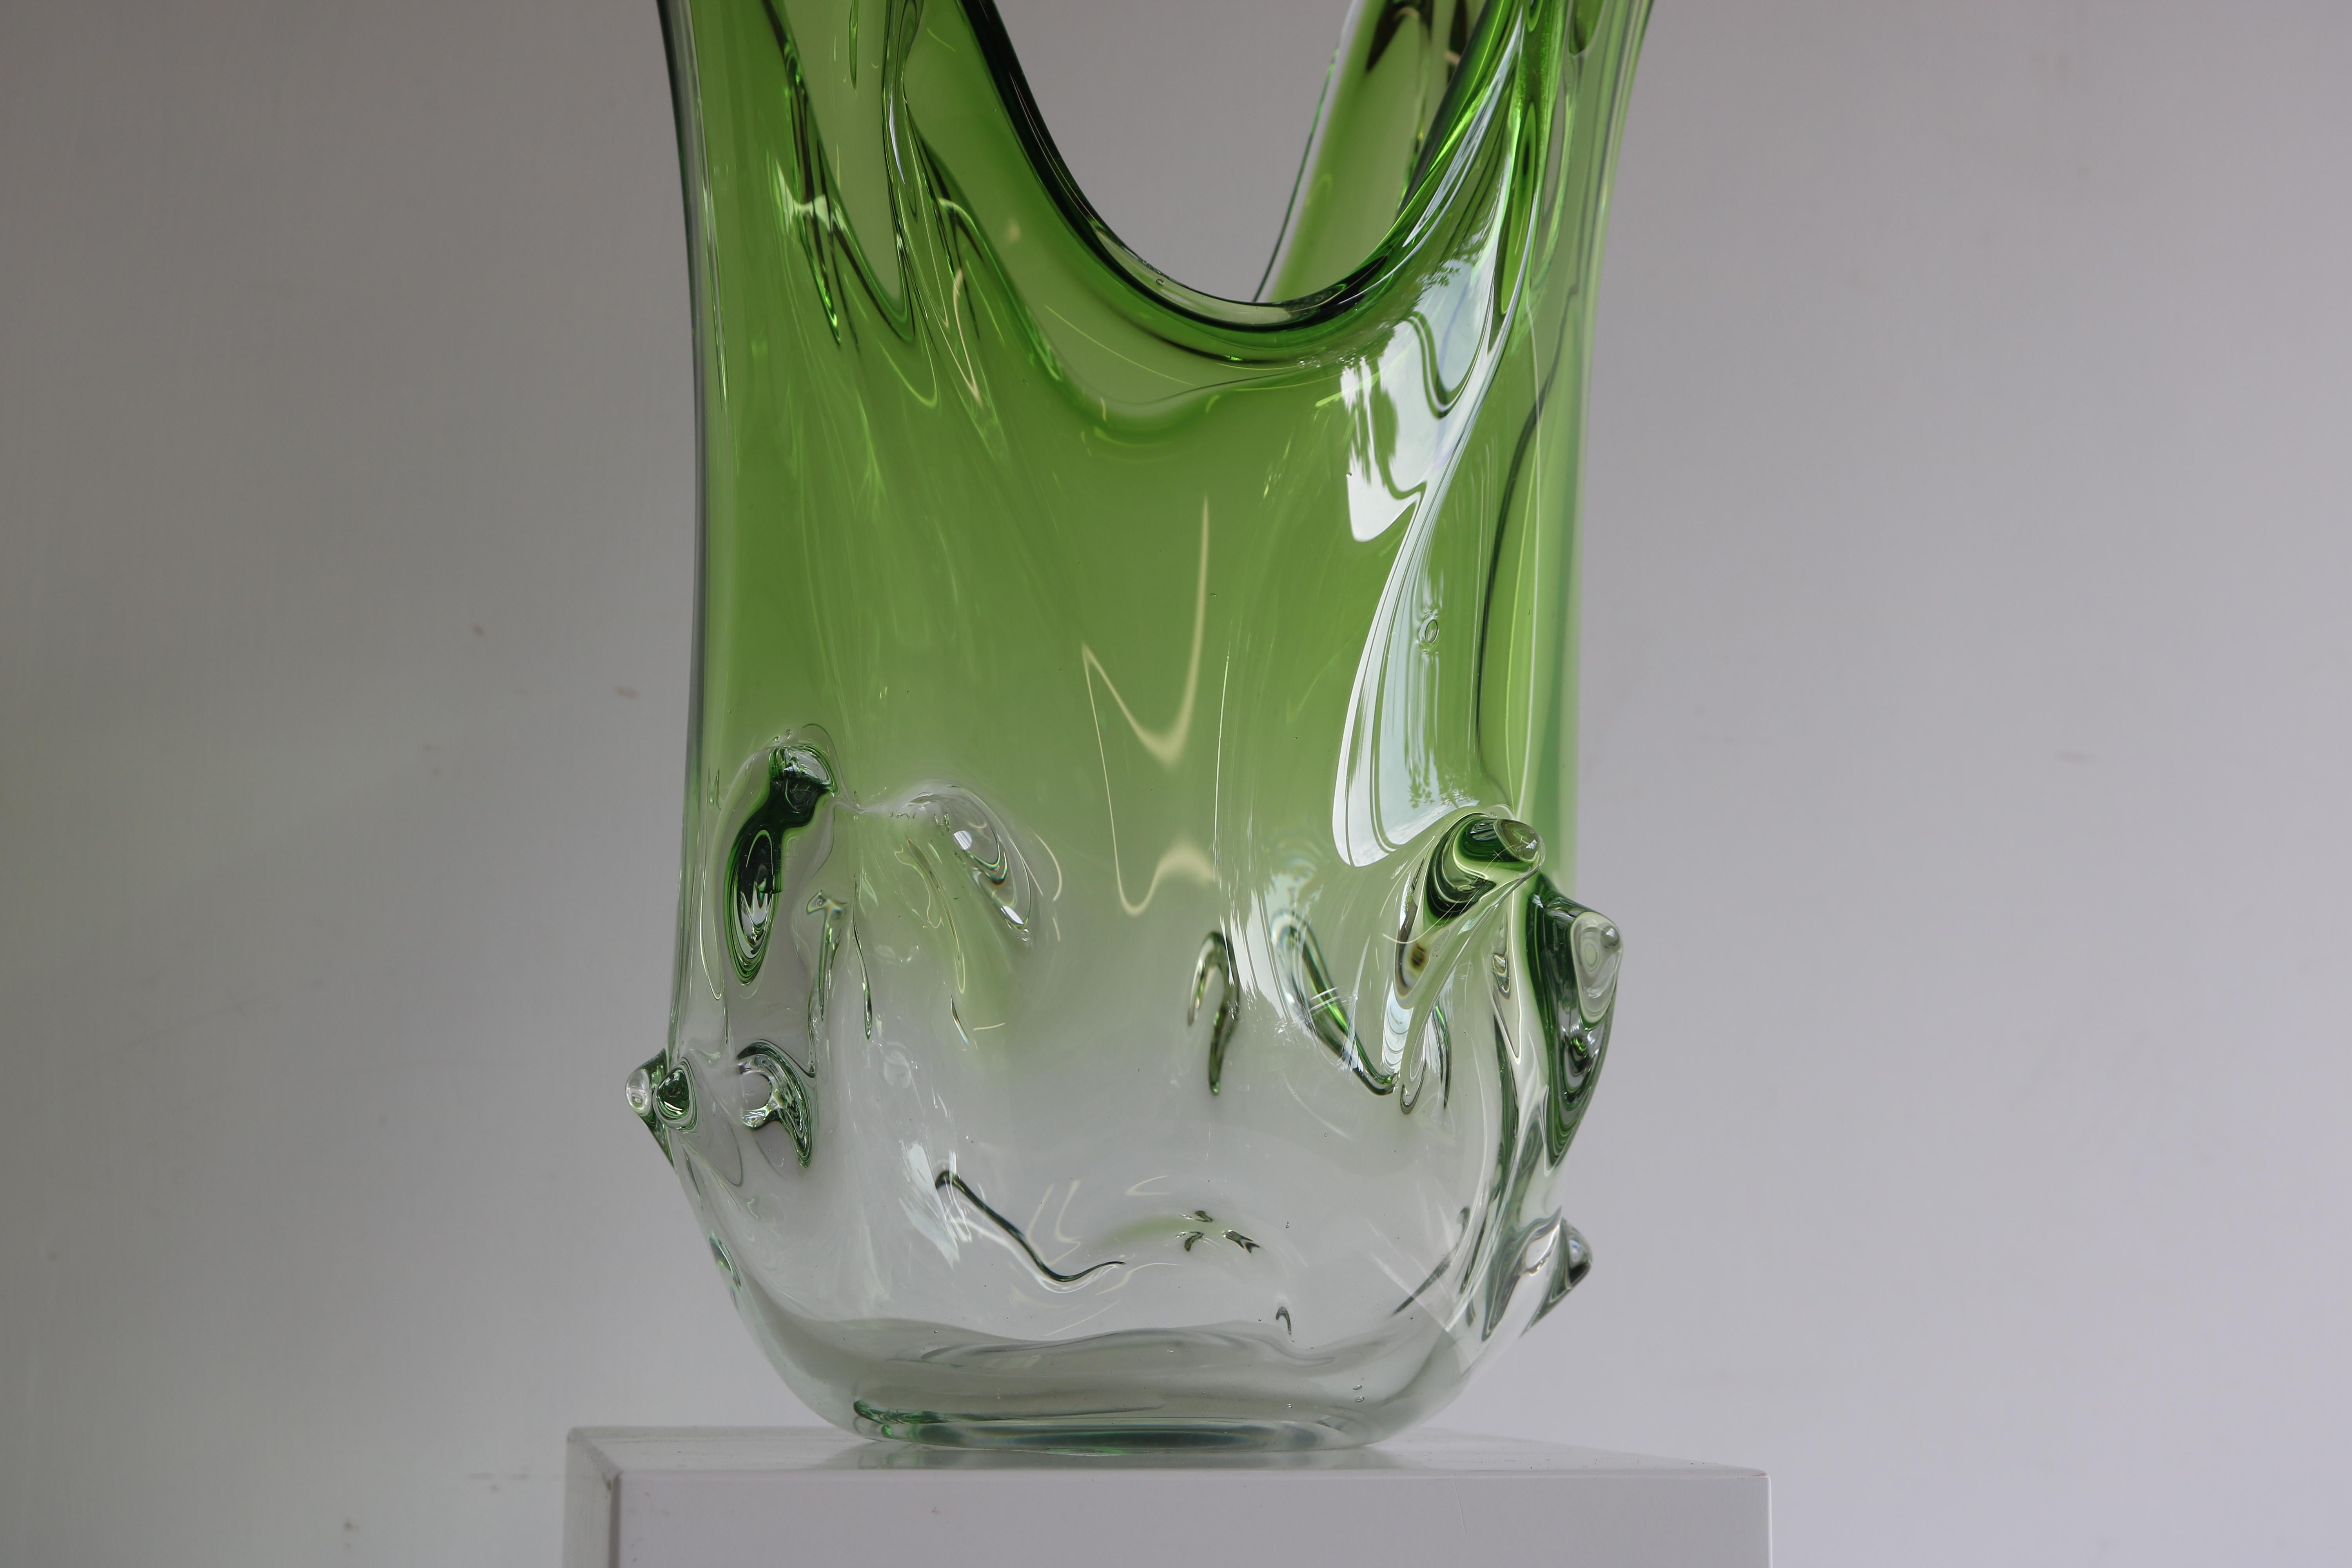 Ajoutez une touche d'élégance à votre décoration intérieure avec ce magnifique vase en verre de Murano. Exceptionnel grand modèle de 20 pouces et d'un poids impressionnant de 5,4 kg ! Fabriqué selon la technique sommerso, ce vase présente un